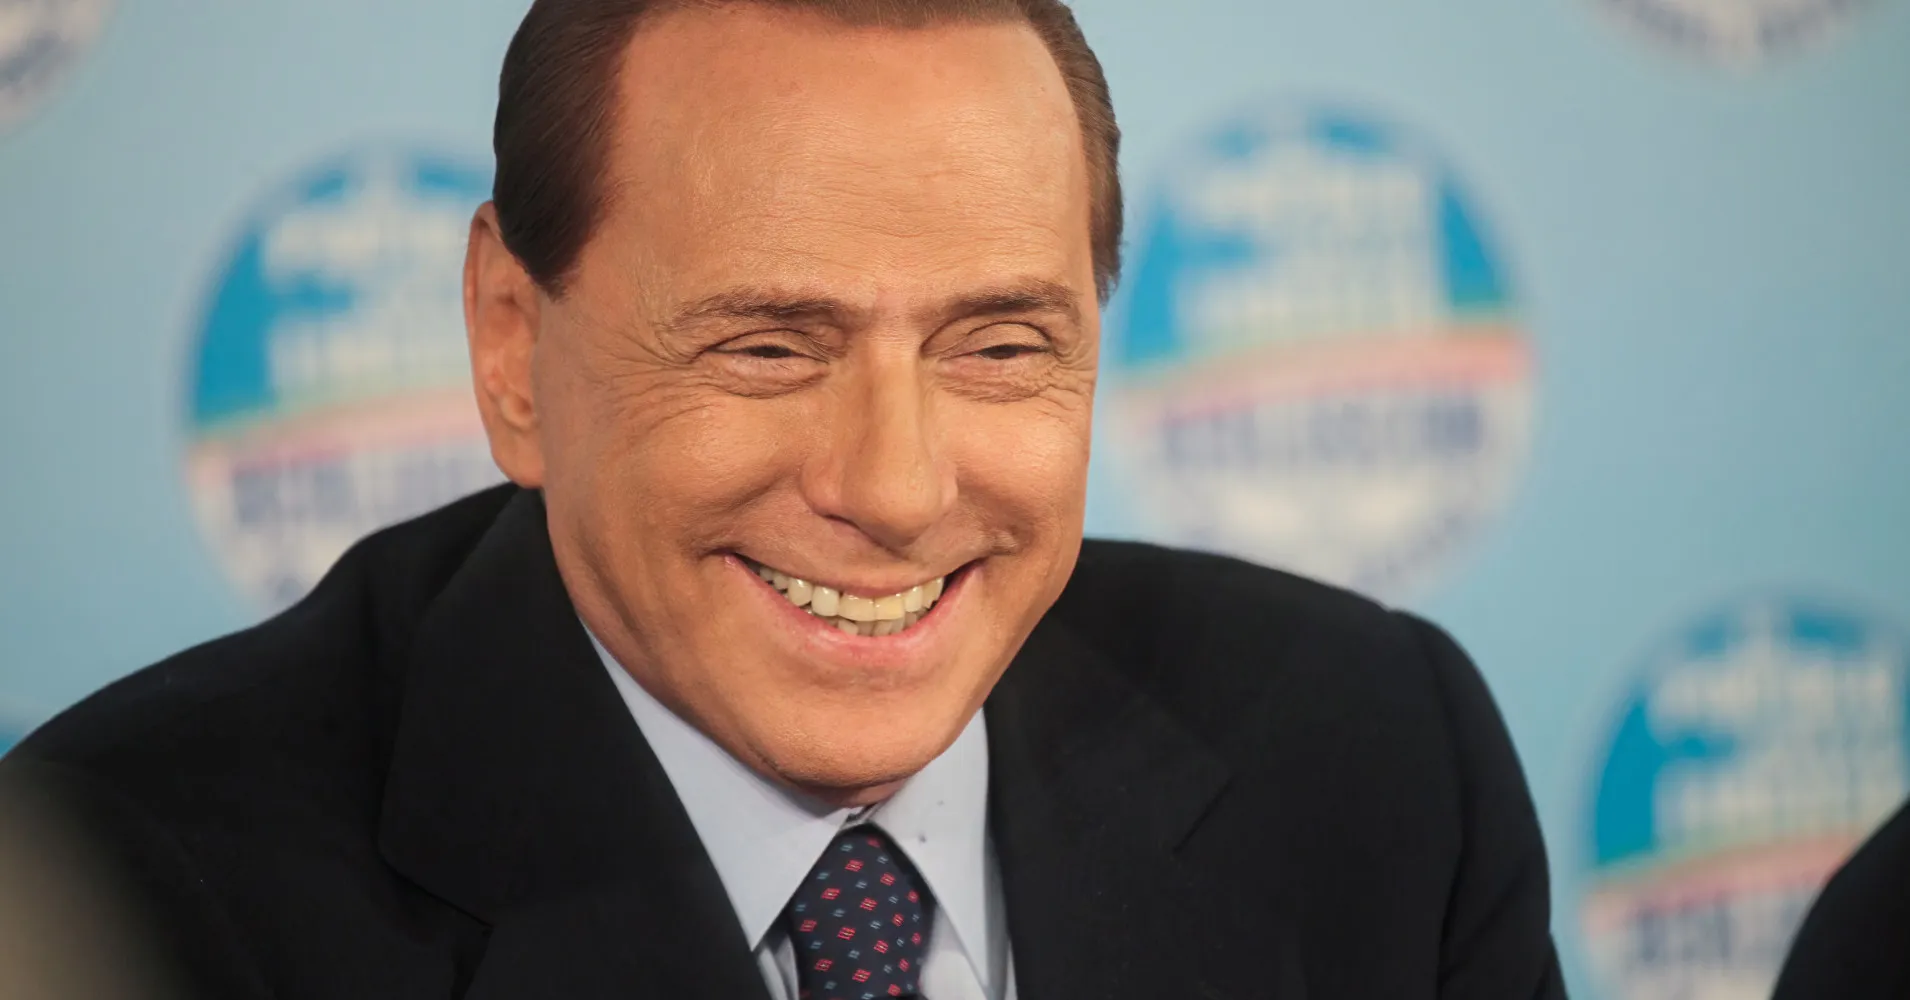 Berlusconi dengan makamnya sendiri.  Ha messo il telefono e le chiavi nella tomba, con la sua ragazza che riposava accanto a lui